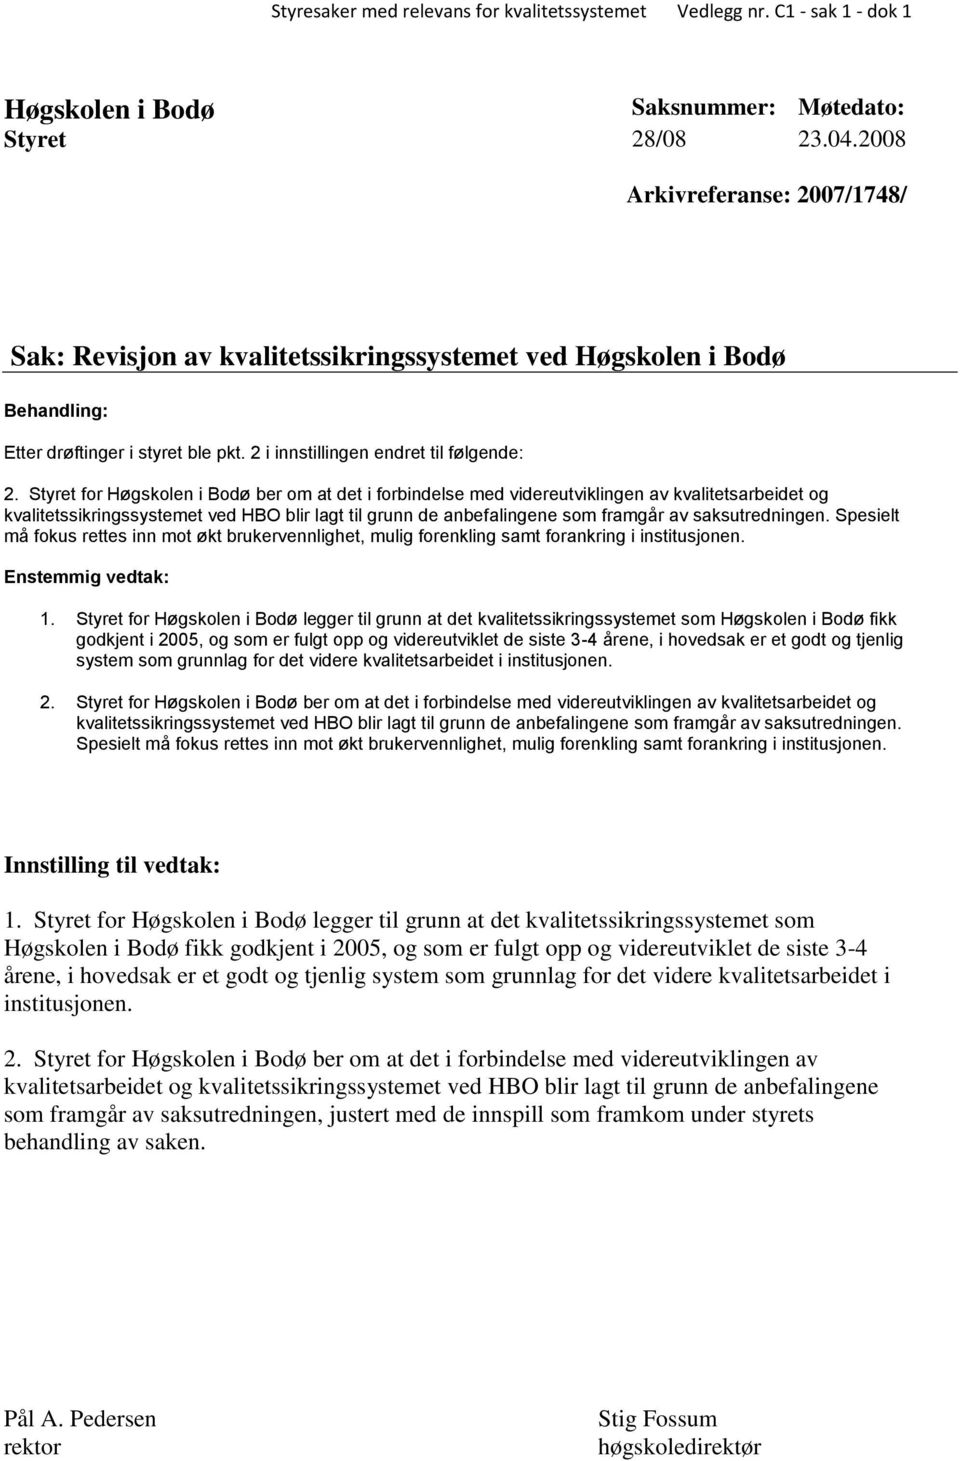 Styret for Høgskolen i Bodø ber om at det i forbindelse med videreutviklingen av kvalitetsarbeidet og kvalitetssikringssystemet ved HBO blir lagt til grunn de anbefalingene som framgår av